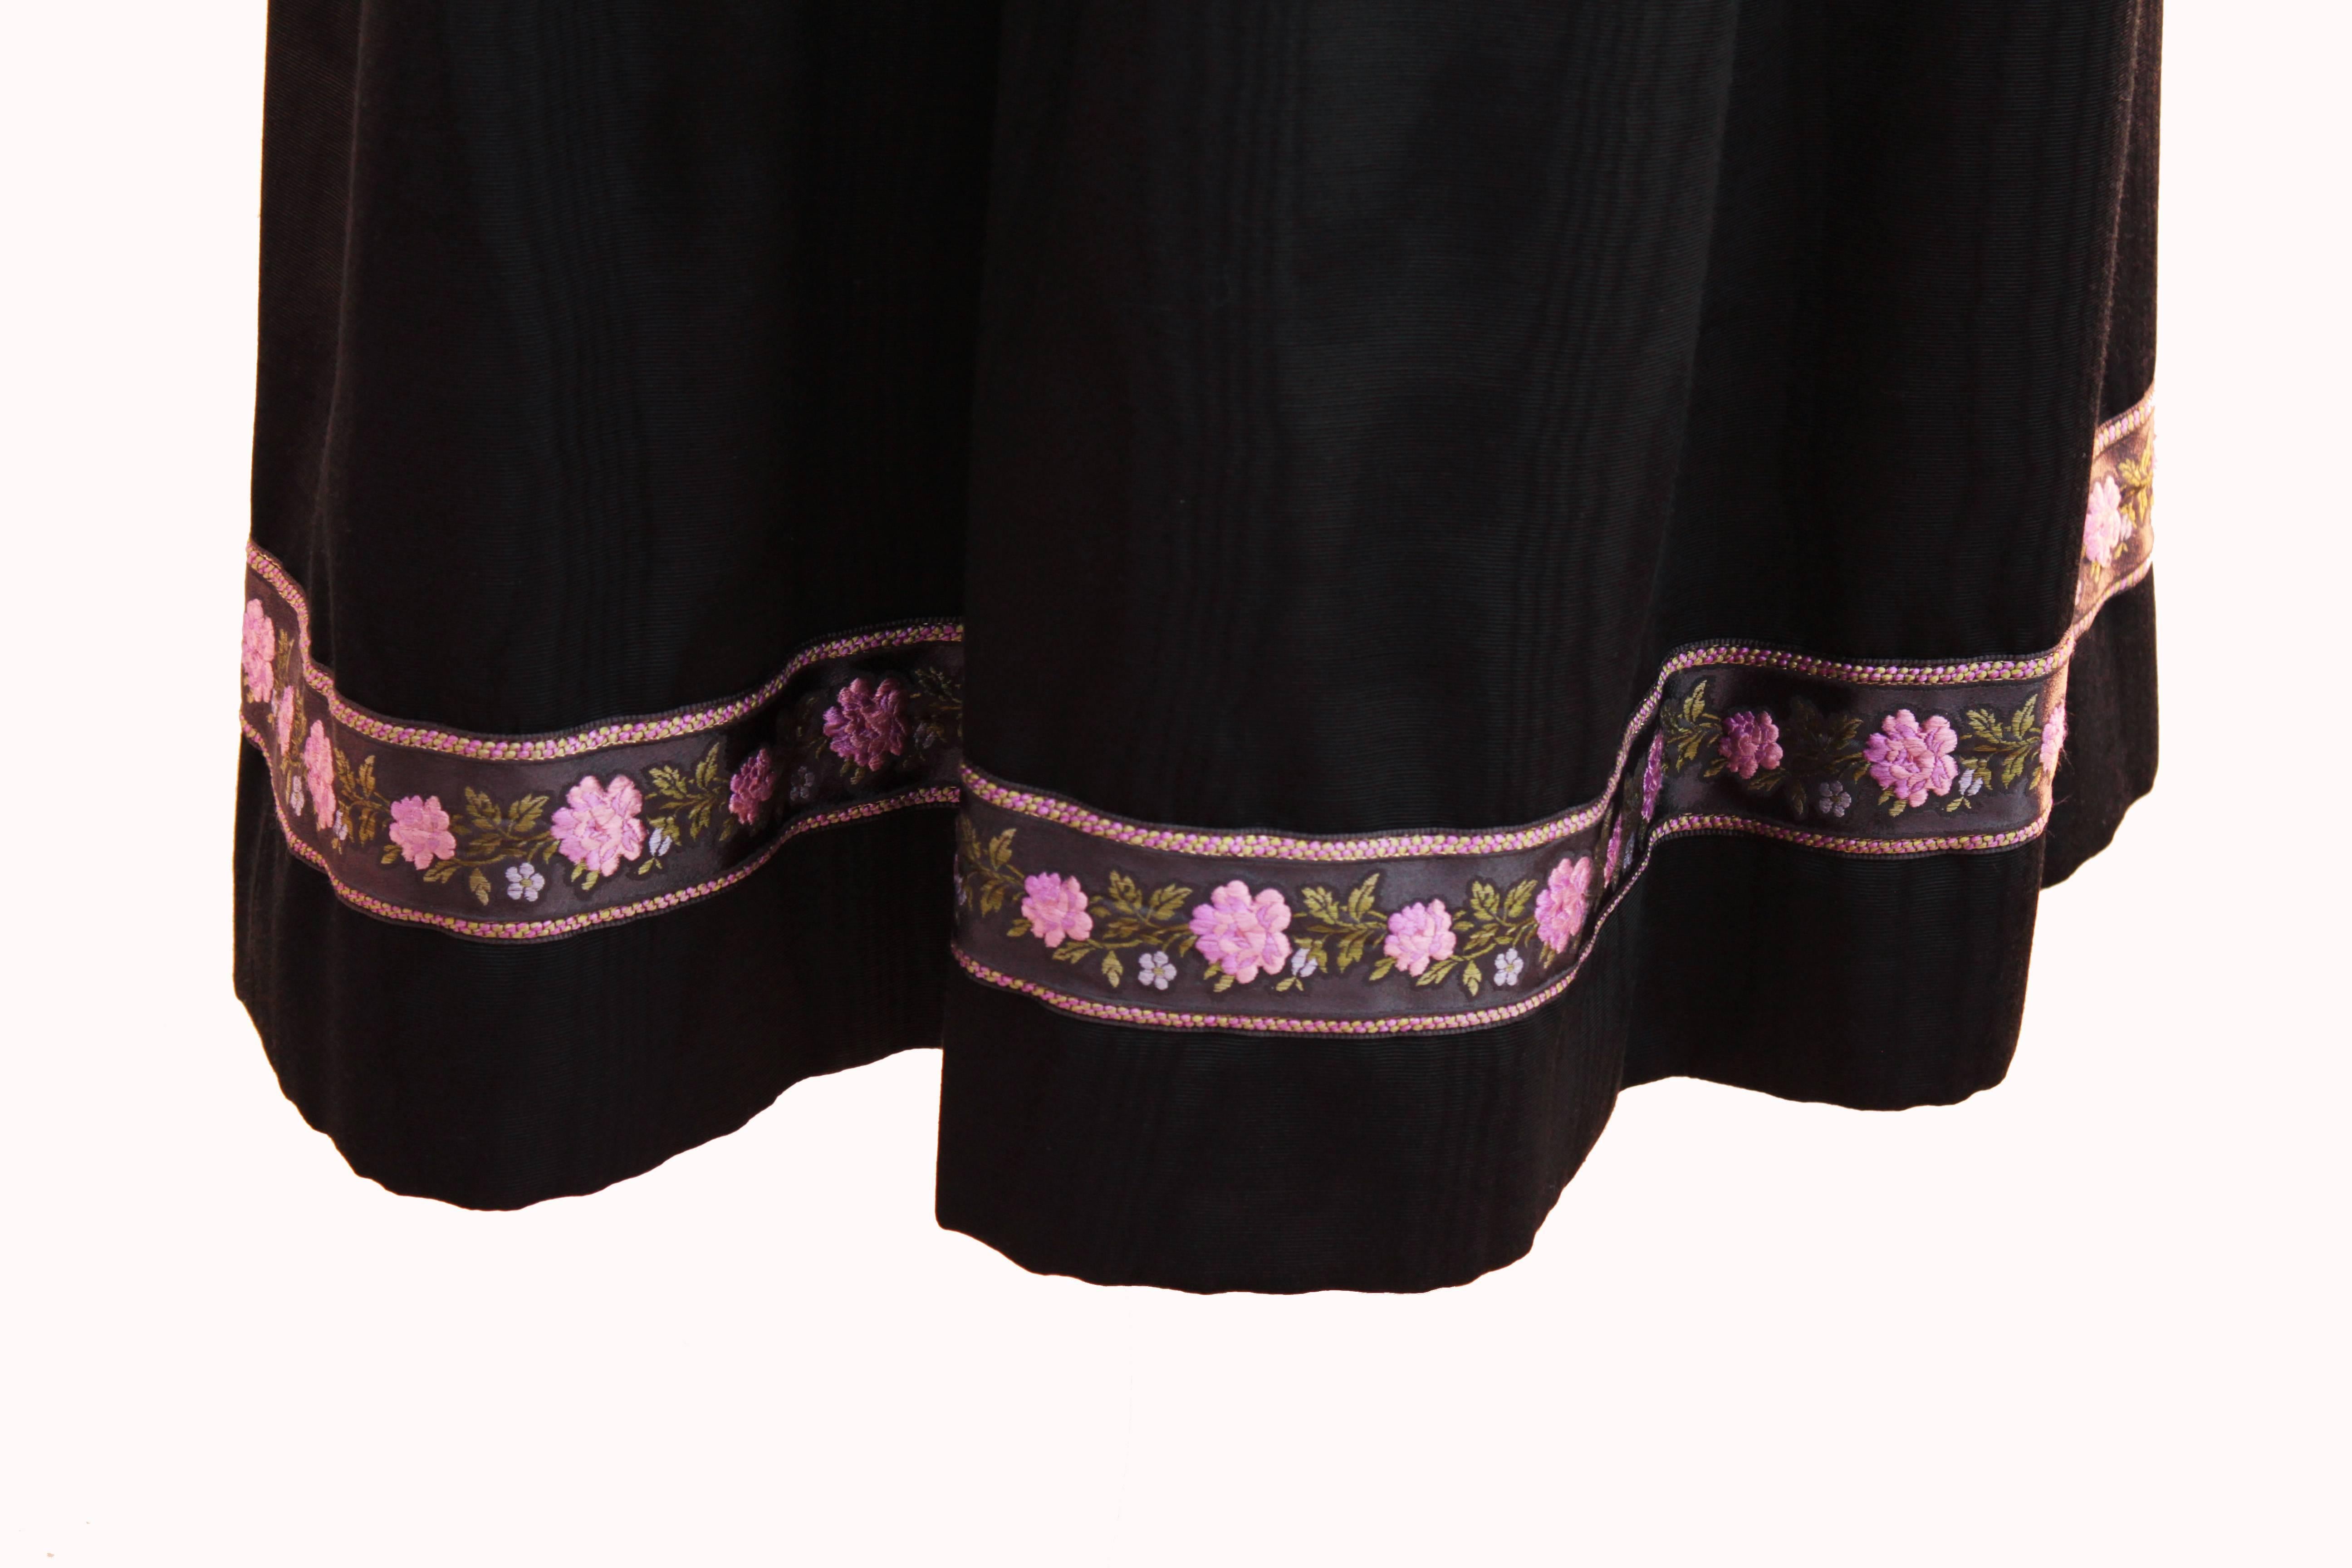 Yves Saint Laurent Silk Skirt Black Moire Embroidered Hem Russian Peasant 70s 3